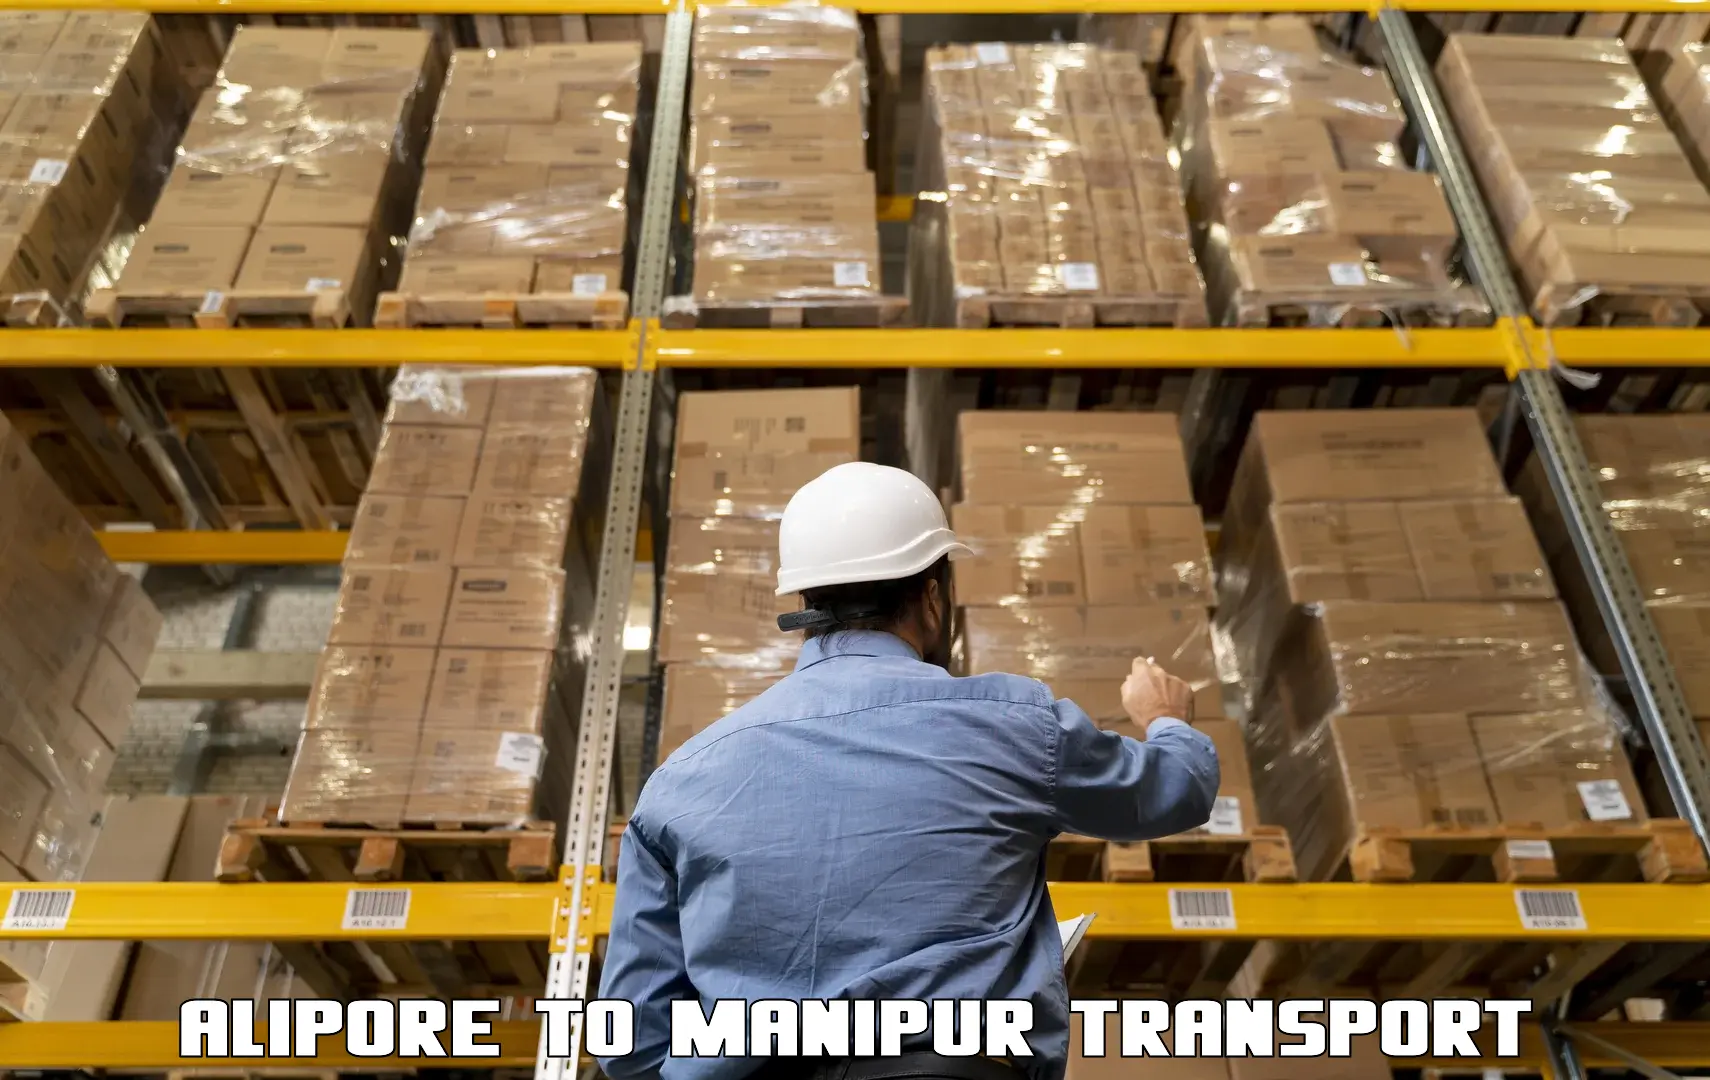 Land transport services Alipore to Senapati